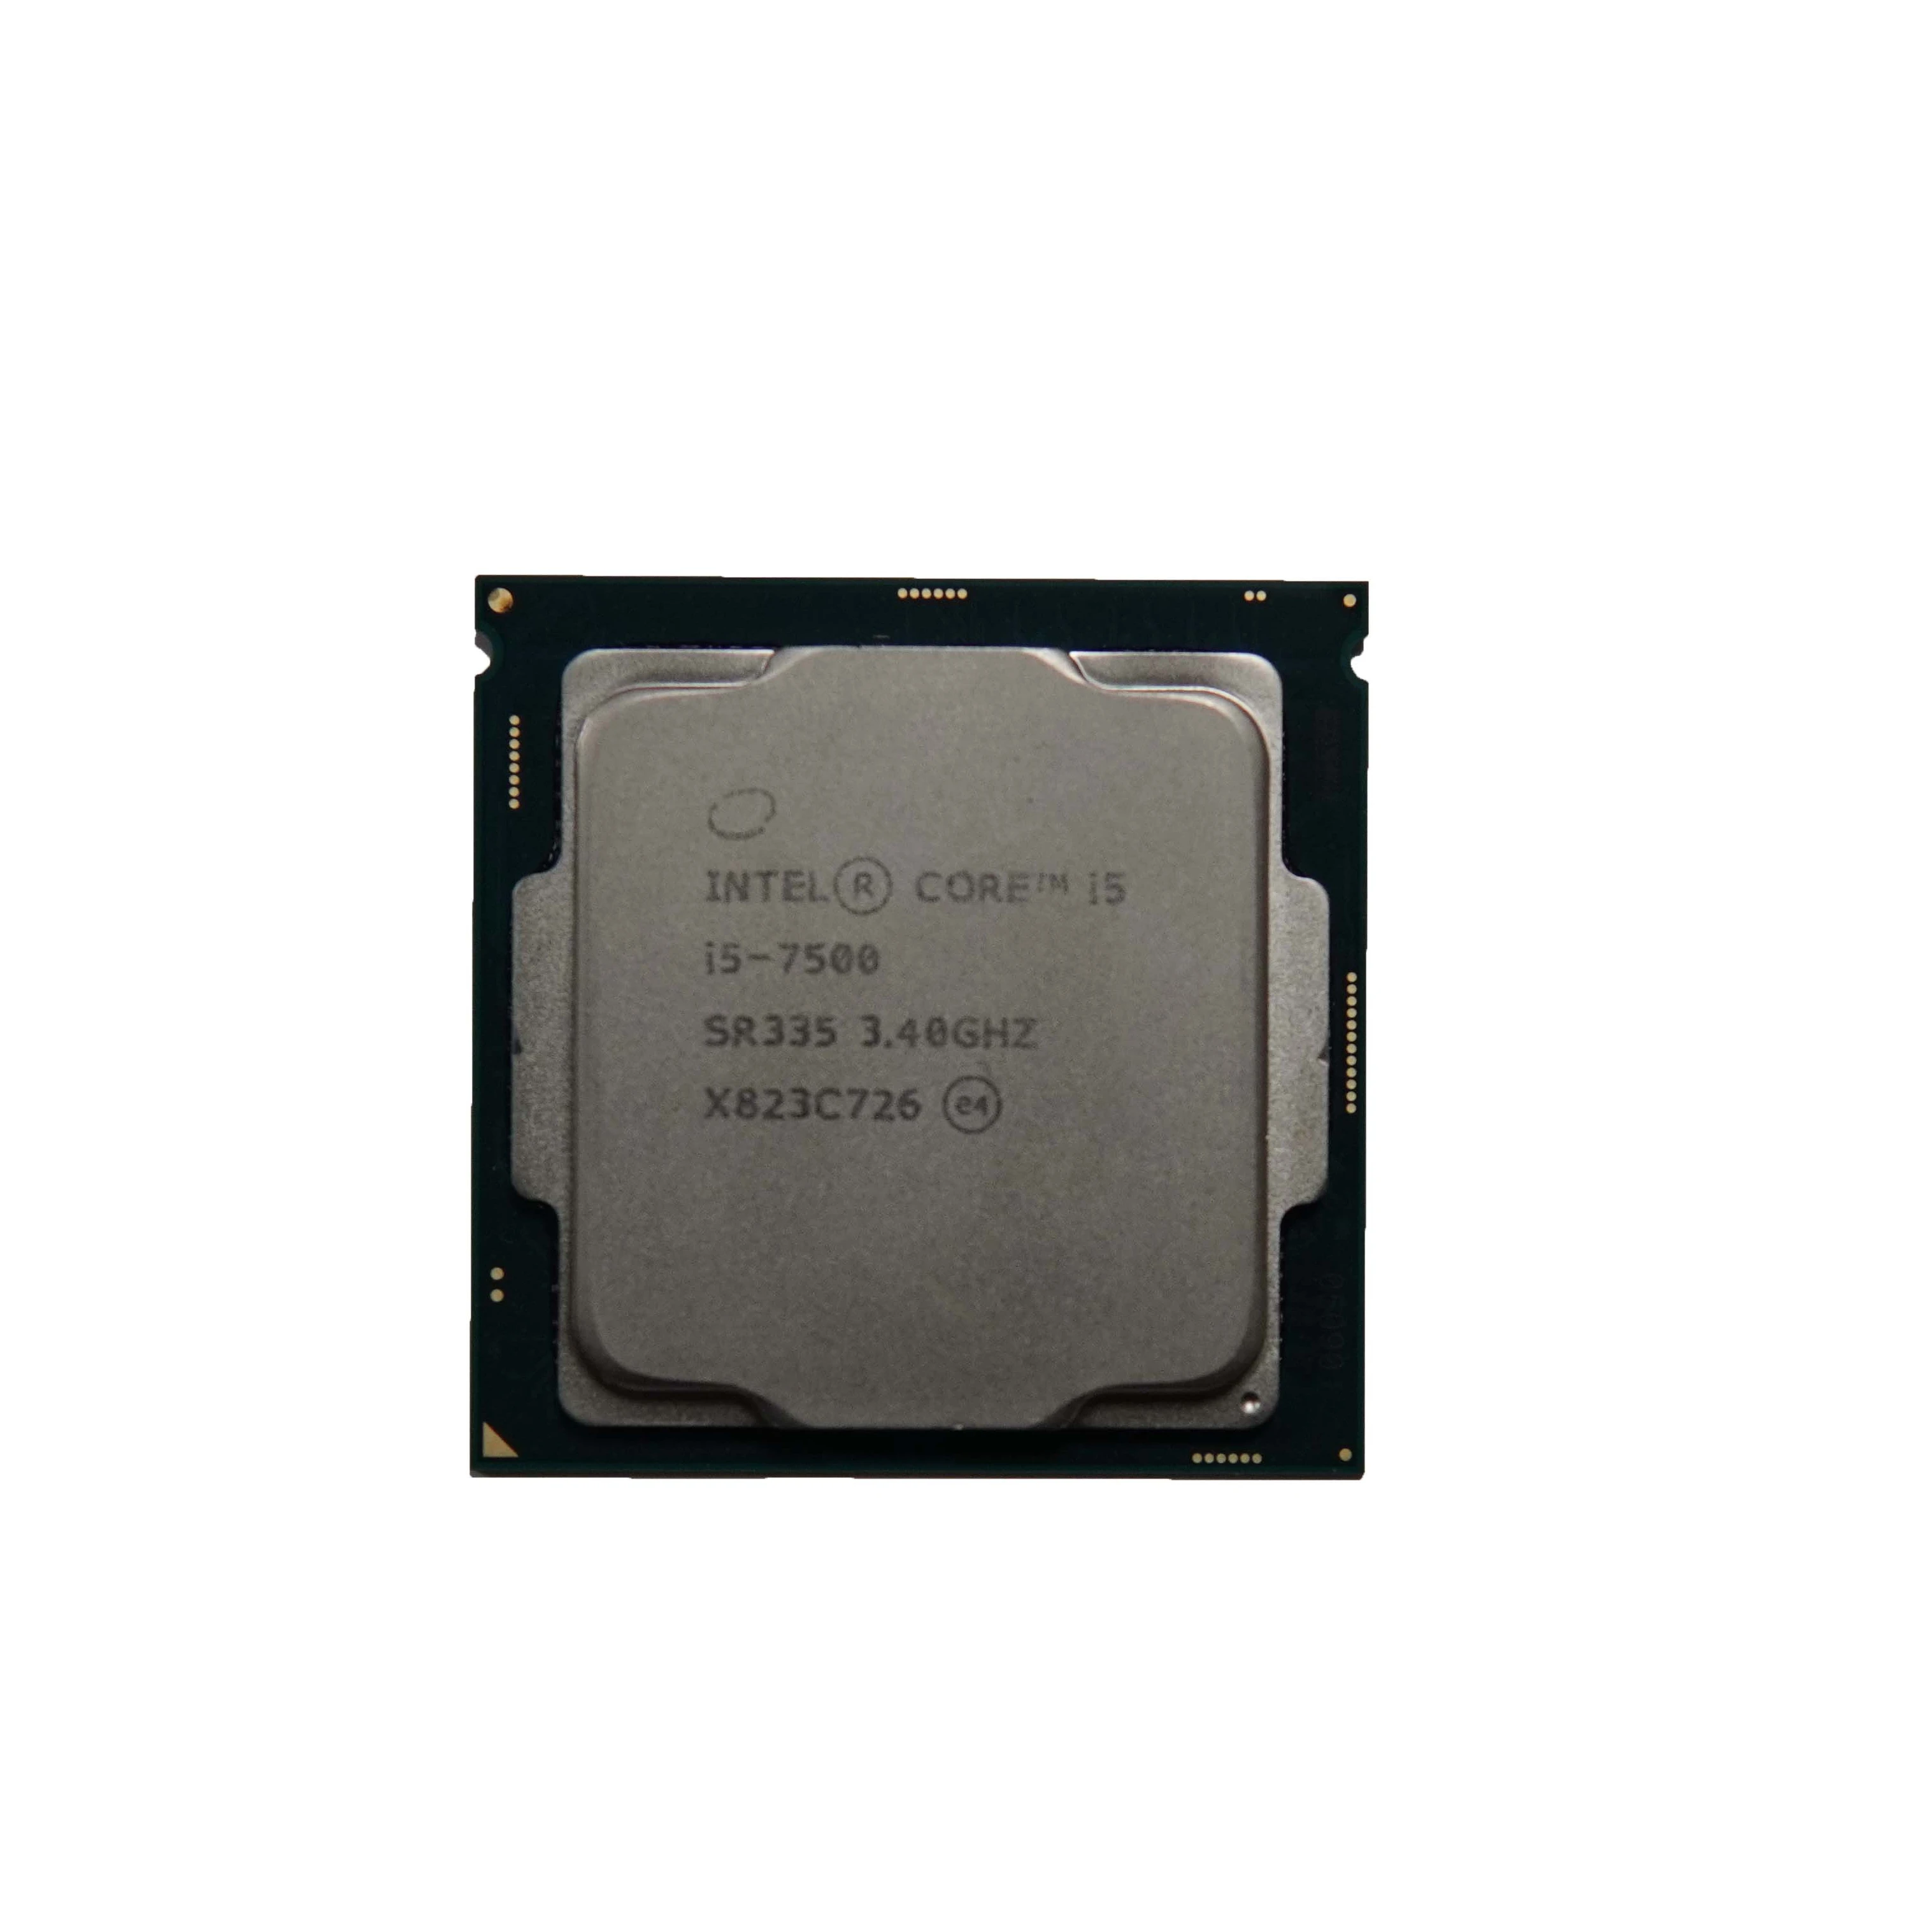 Интел 7500. I5 7500. I5 7500 характеристики.